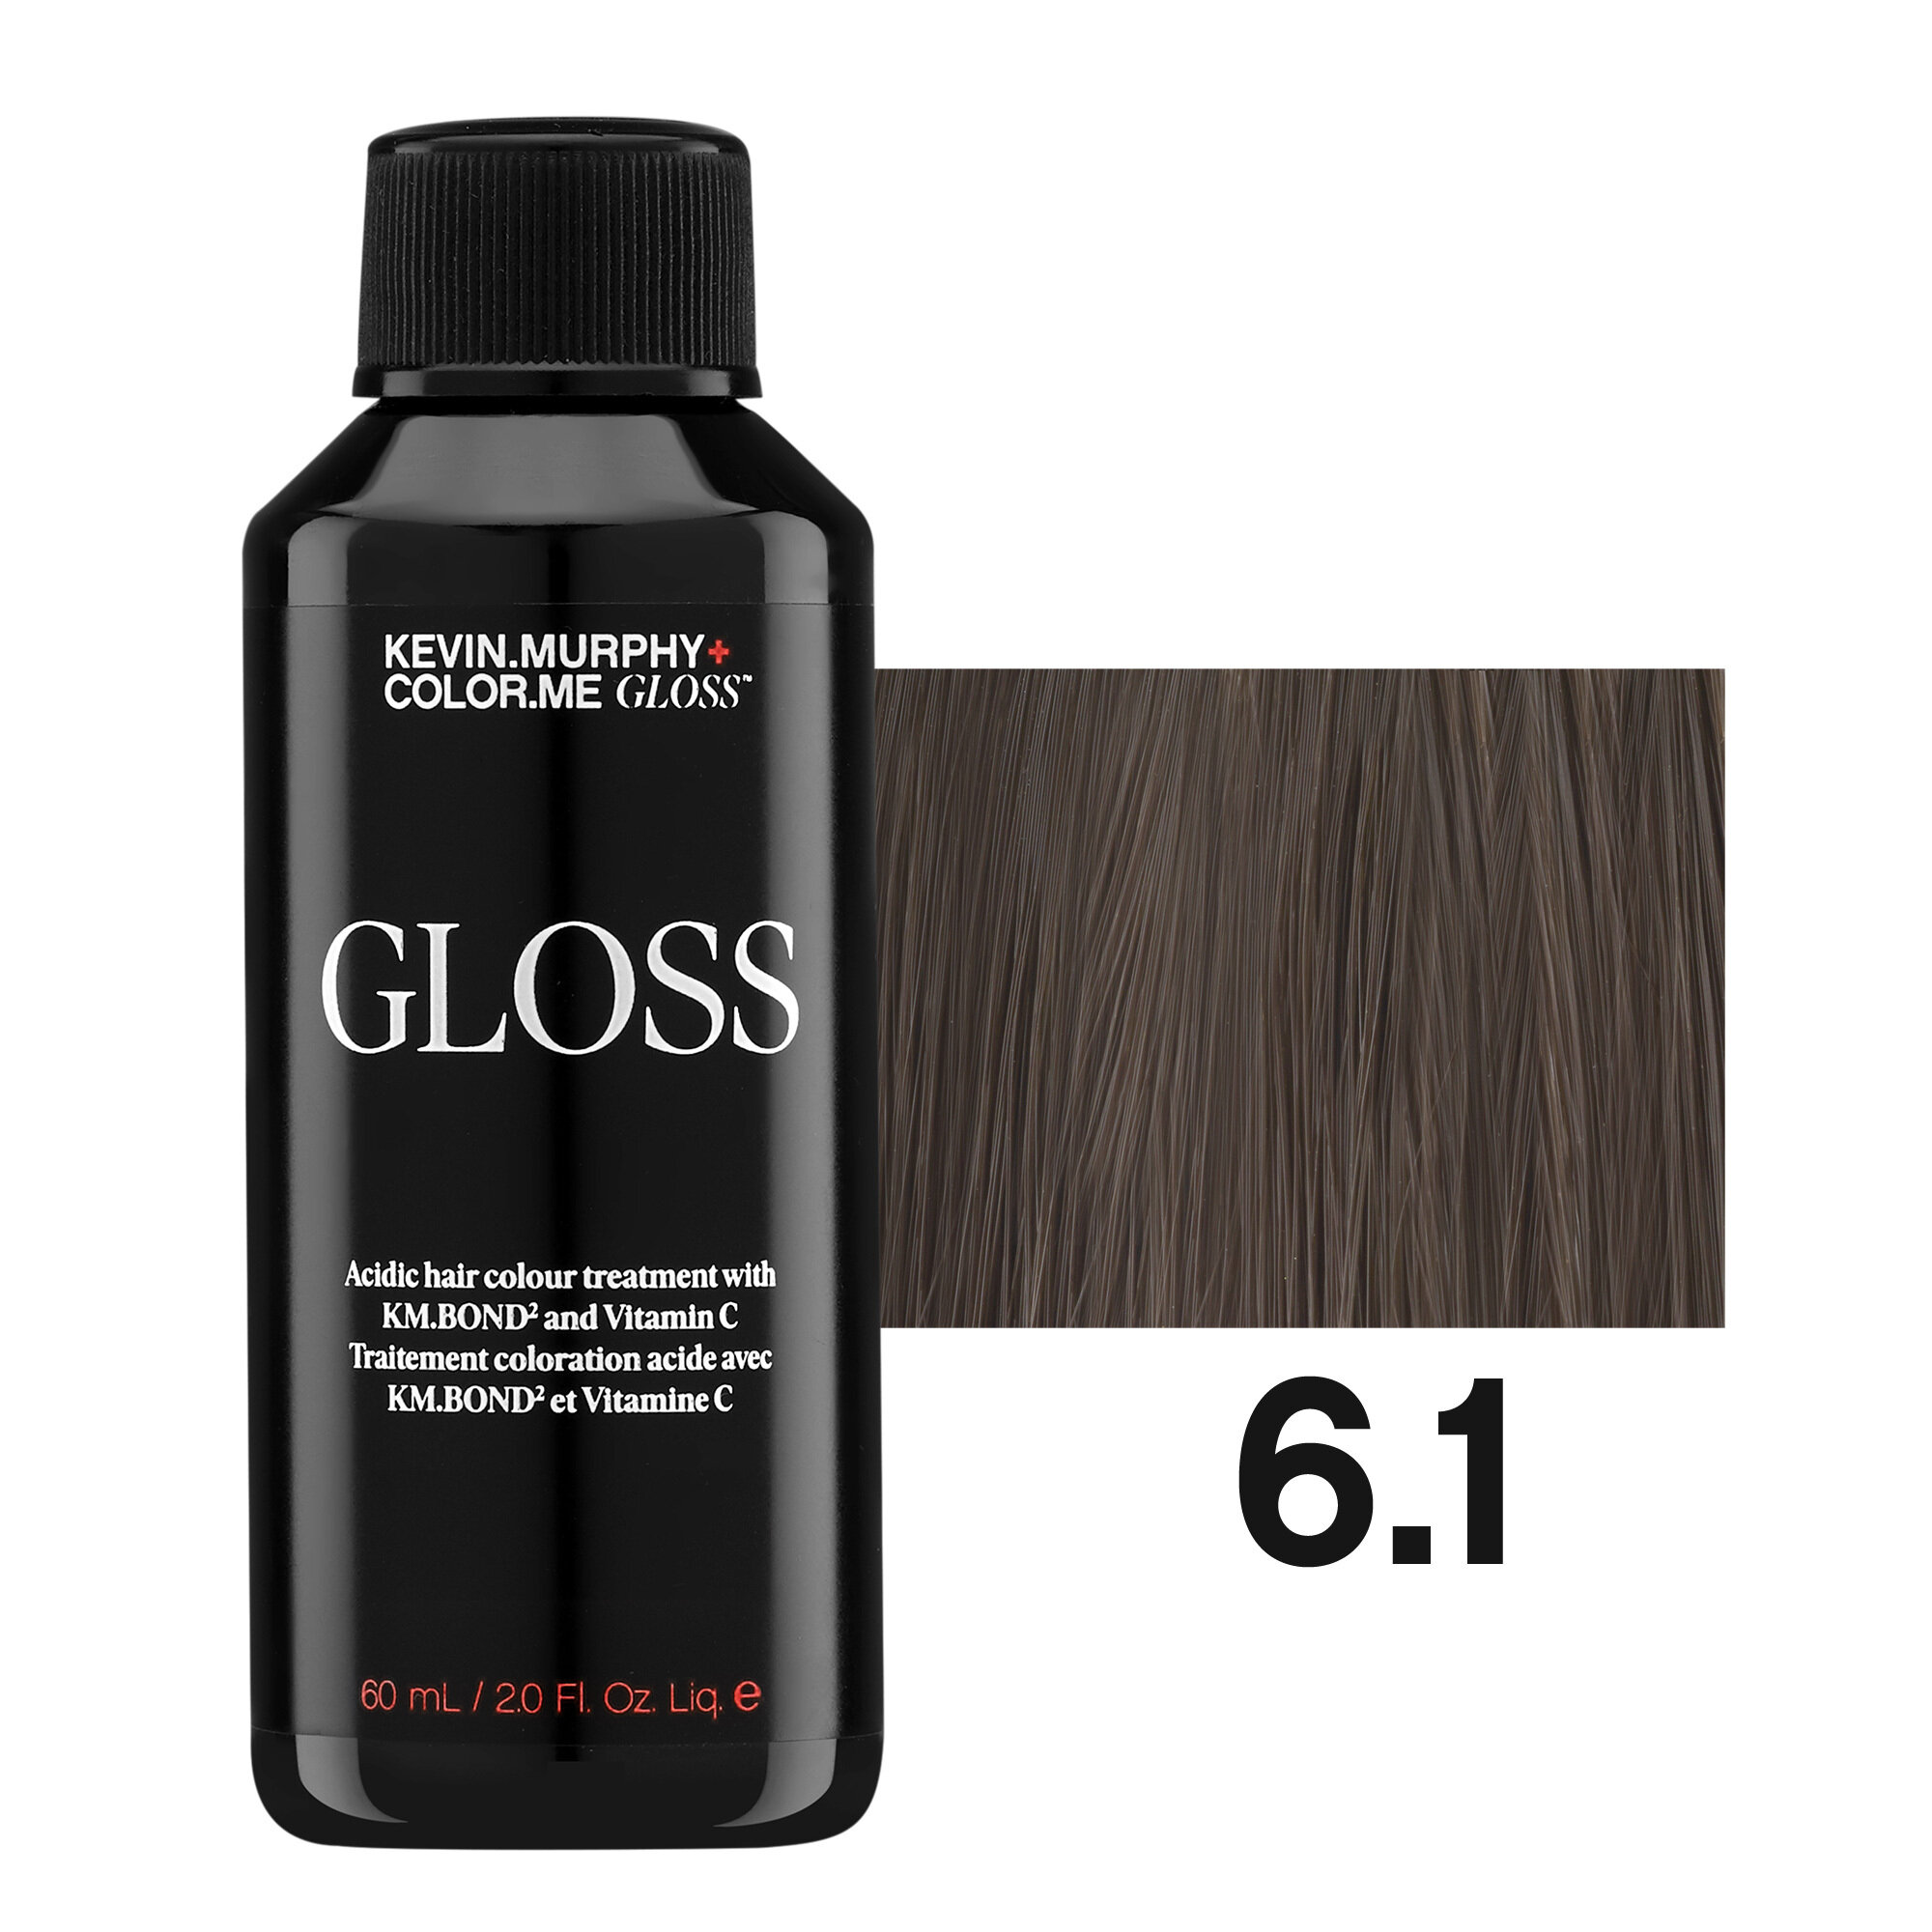 Color.me Gloss 6.1 Полуперманентный гелевый краситель с кислым pH и технологией KM. БОНД2, 60 мл